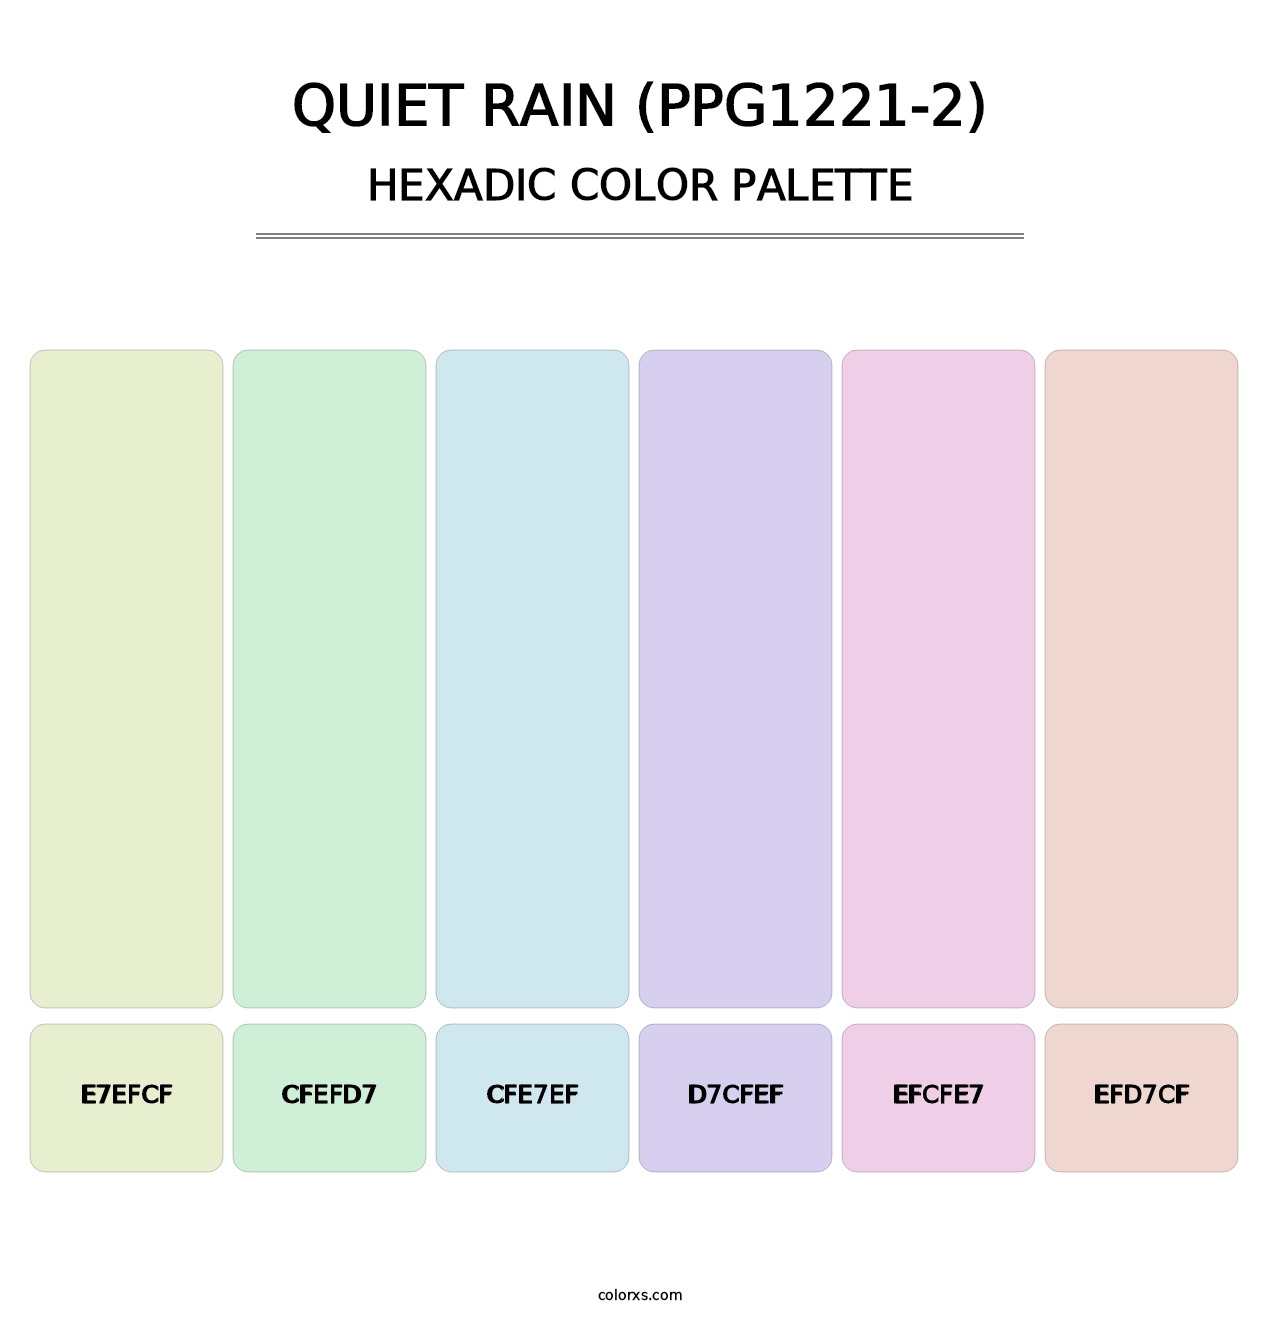 Quiet Rain (PPG1221-2) - Hexadic Color Palette